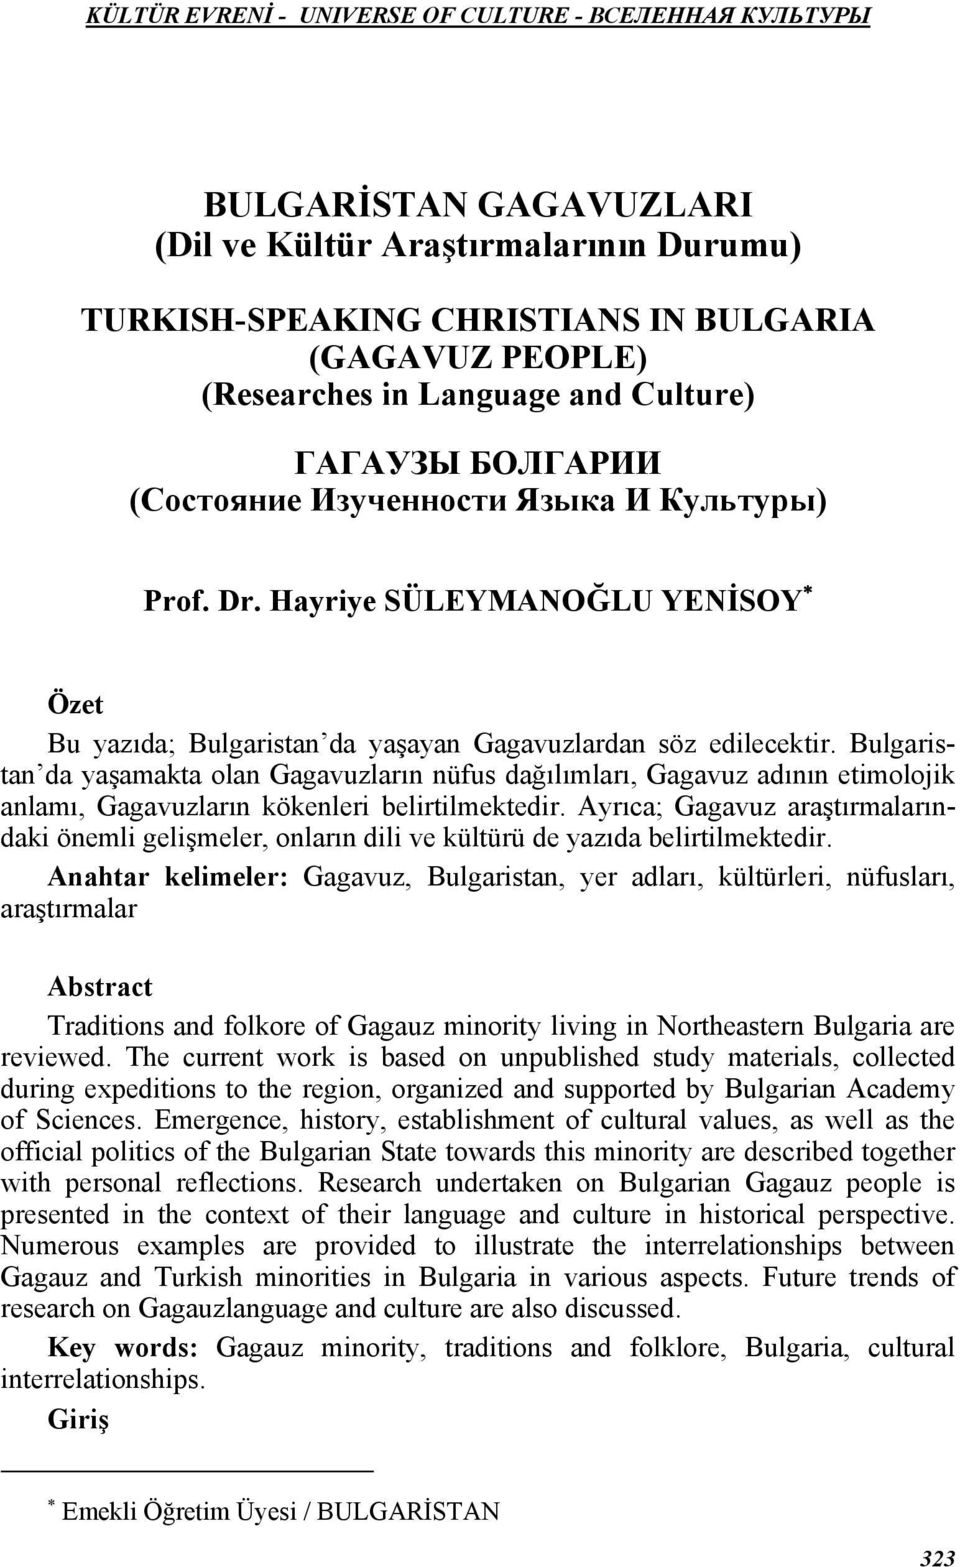 Bulgaristan da yaşamakta olan Gagavuzların nüfus dağılımları, Gagavuz adının etimolojik anlamı, Gagavuzların kökenleri belirtilmektedir.